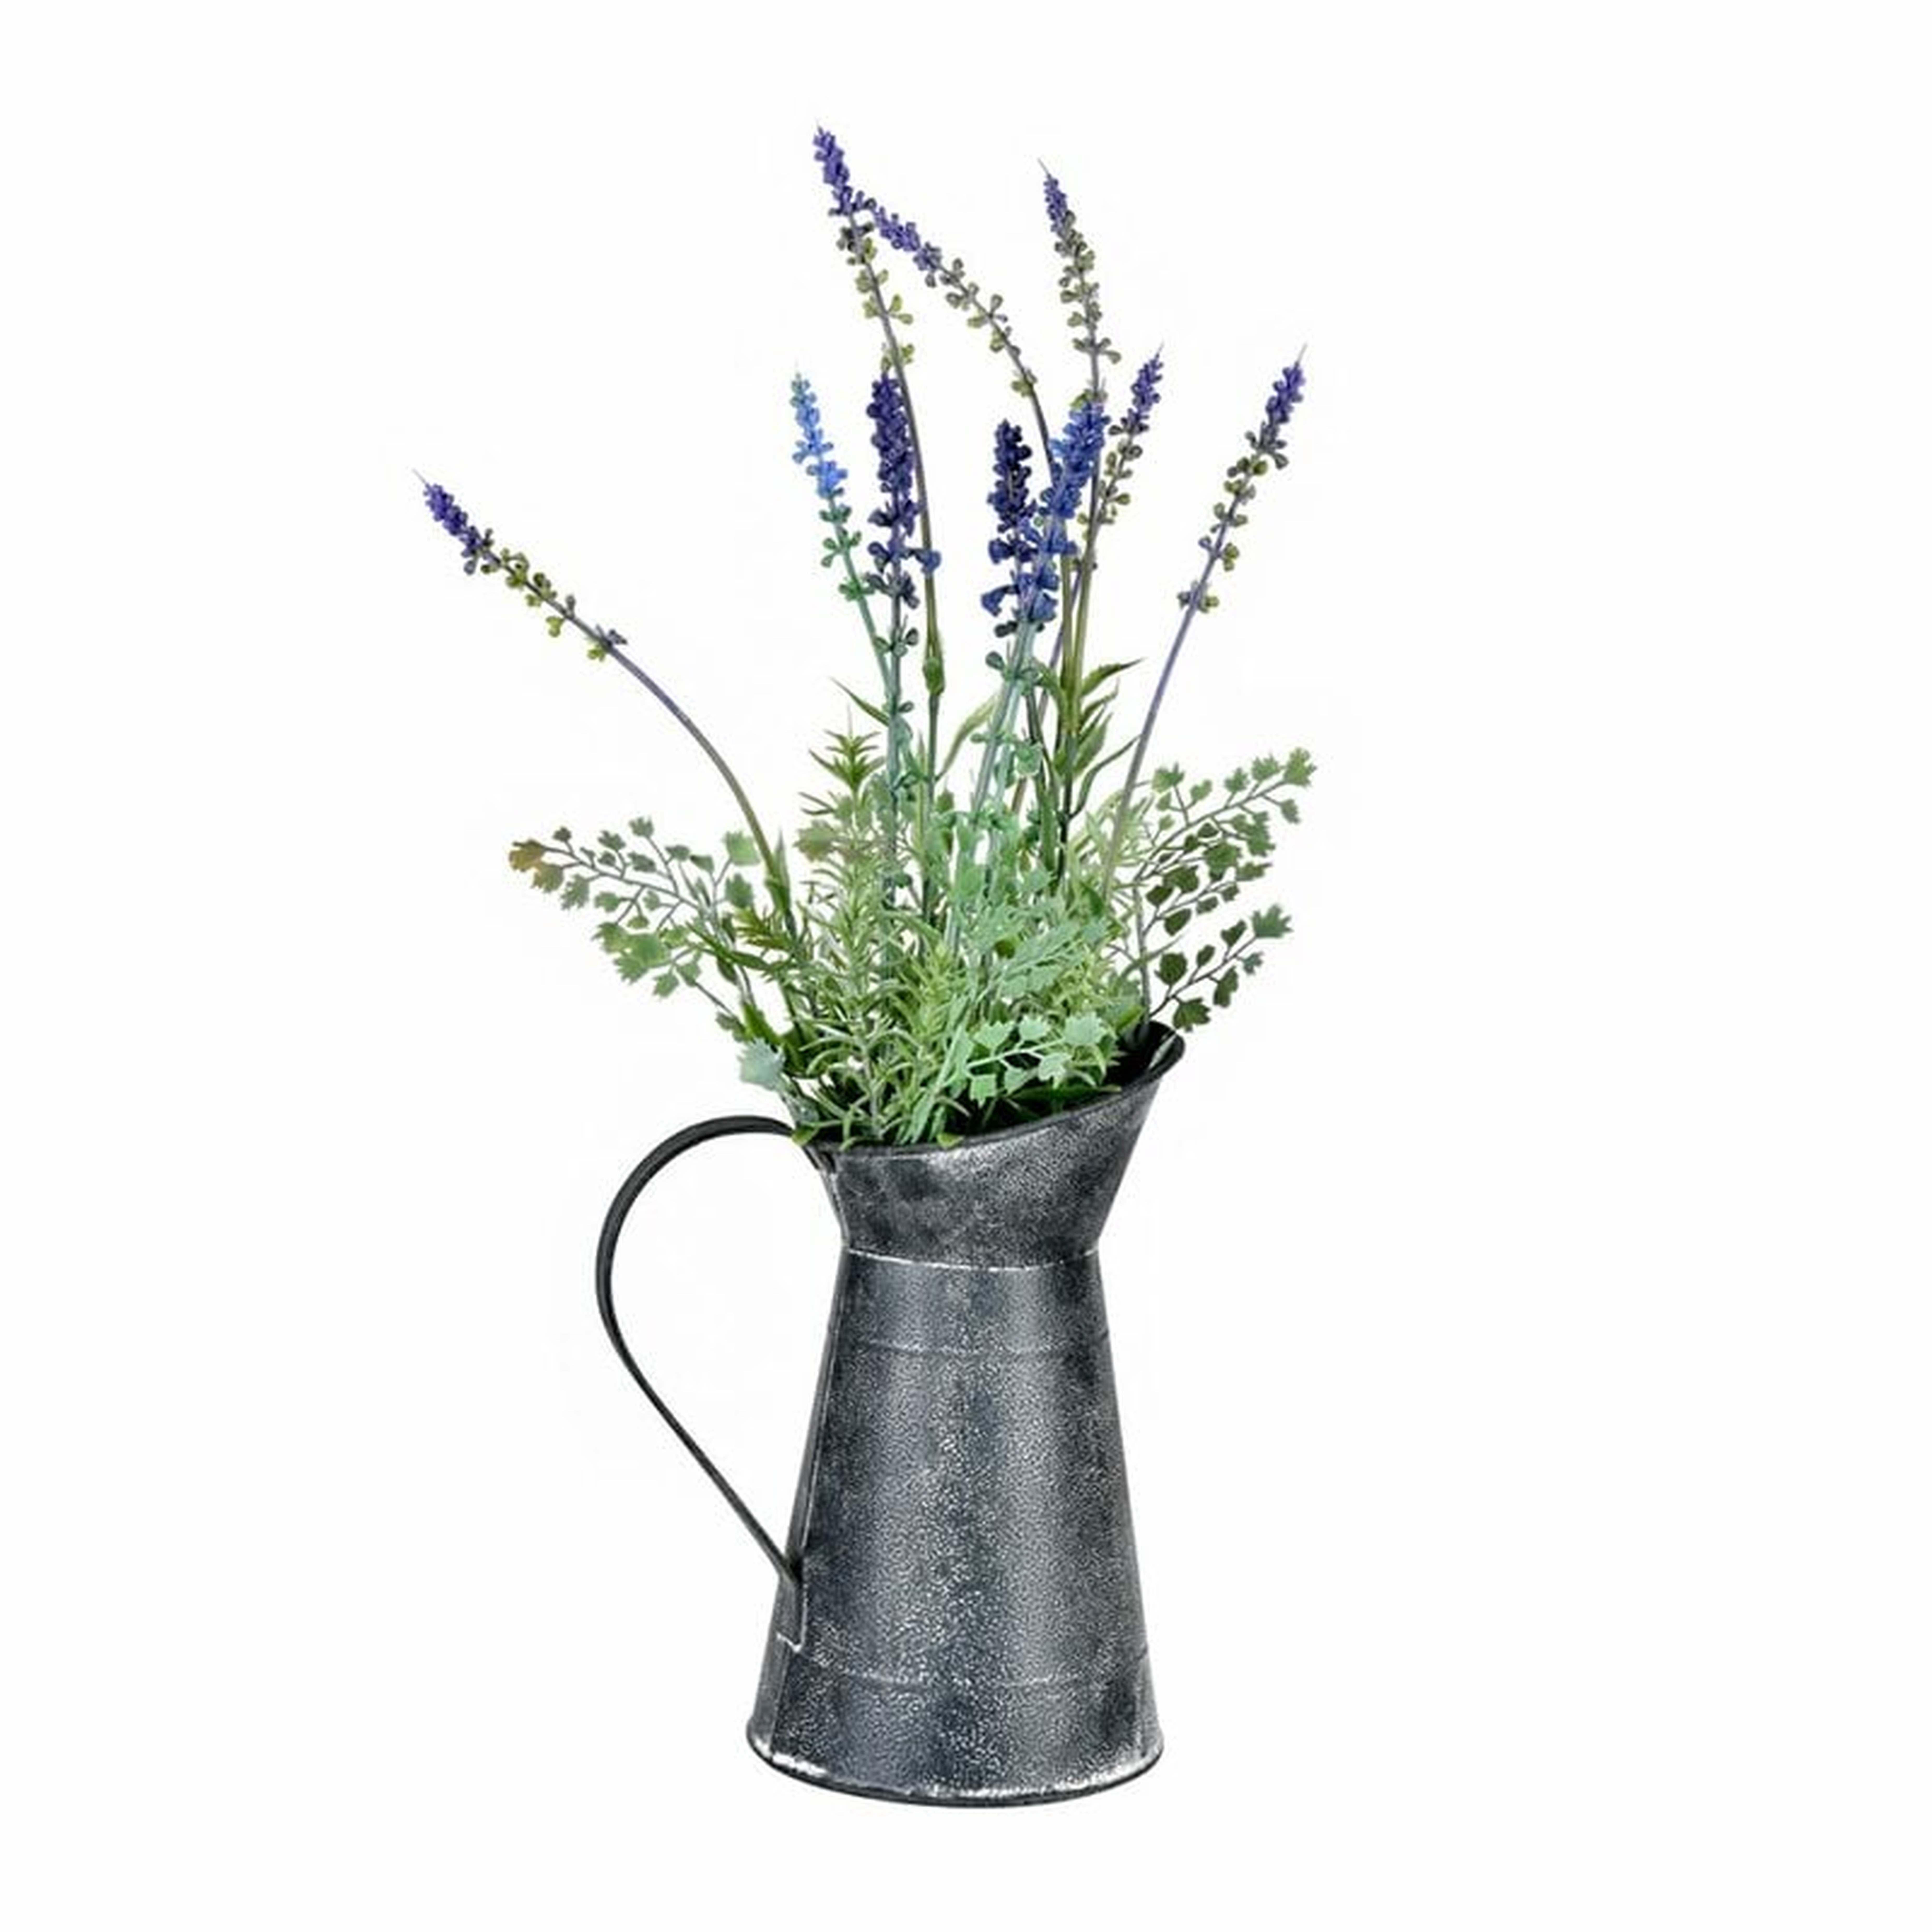 Lavender Floral Arrangement in Pot - Wayfair